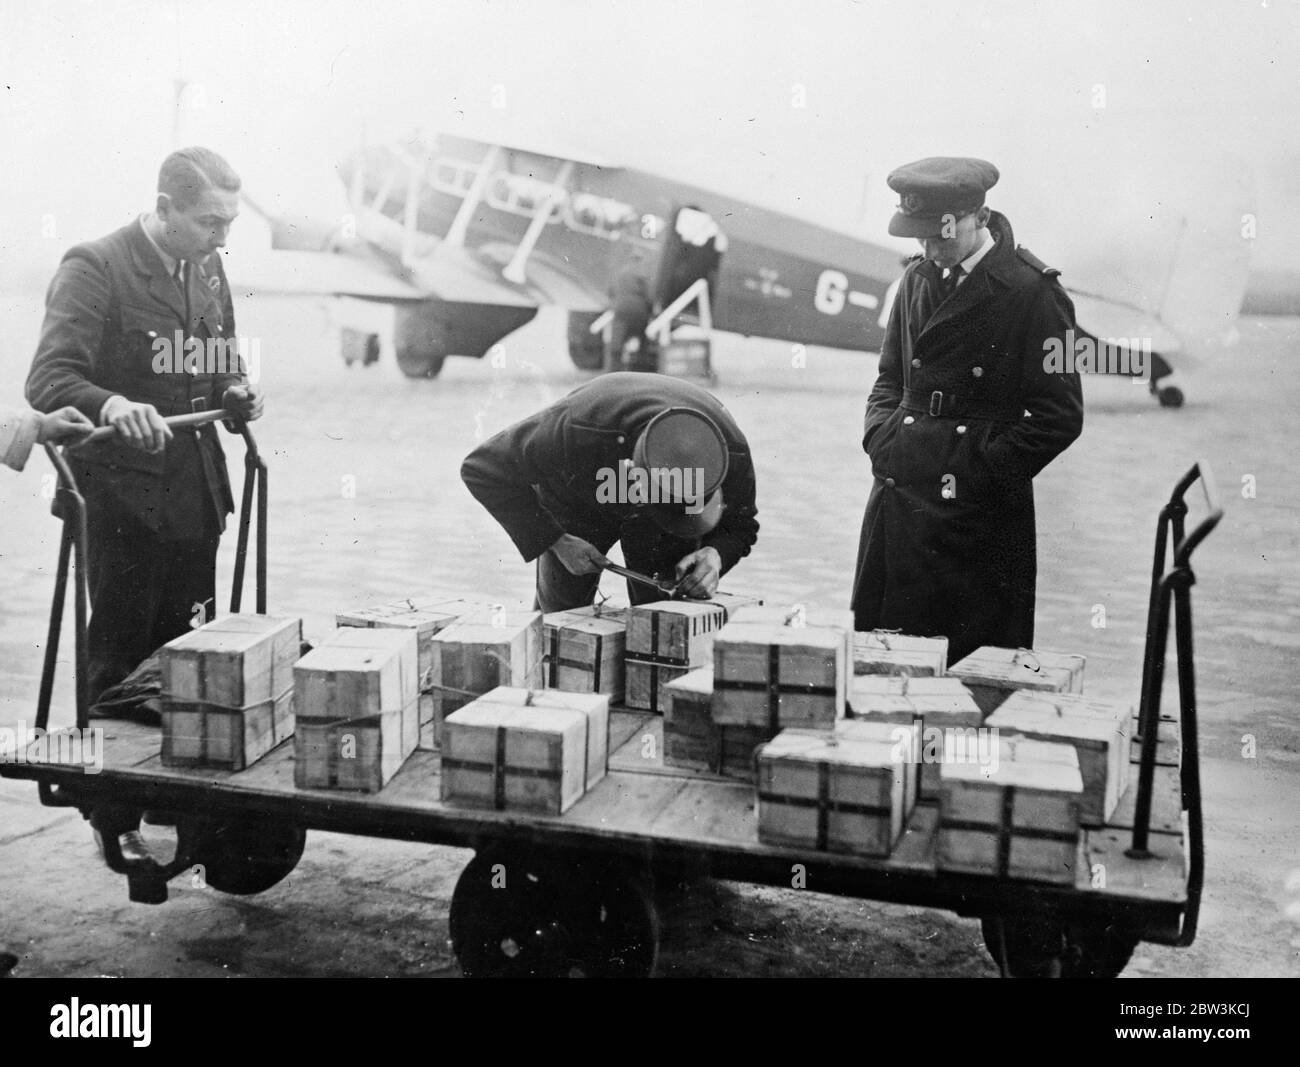 L'or quitte la France par air . Une charge de camion d'or sur le point d'être chargée sur un avion à l'aérodrome du Bourget , Paris . 25 novembre 1935 Banque D'Images